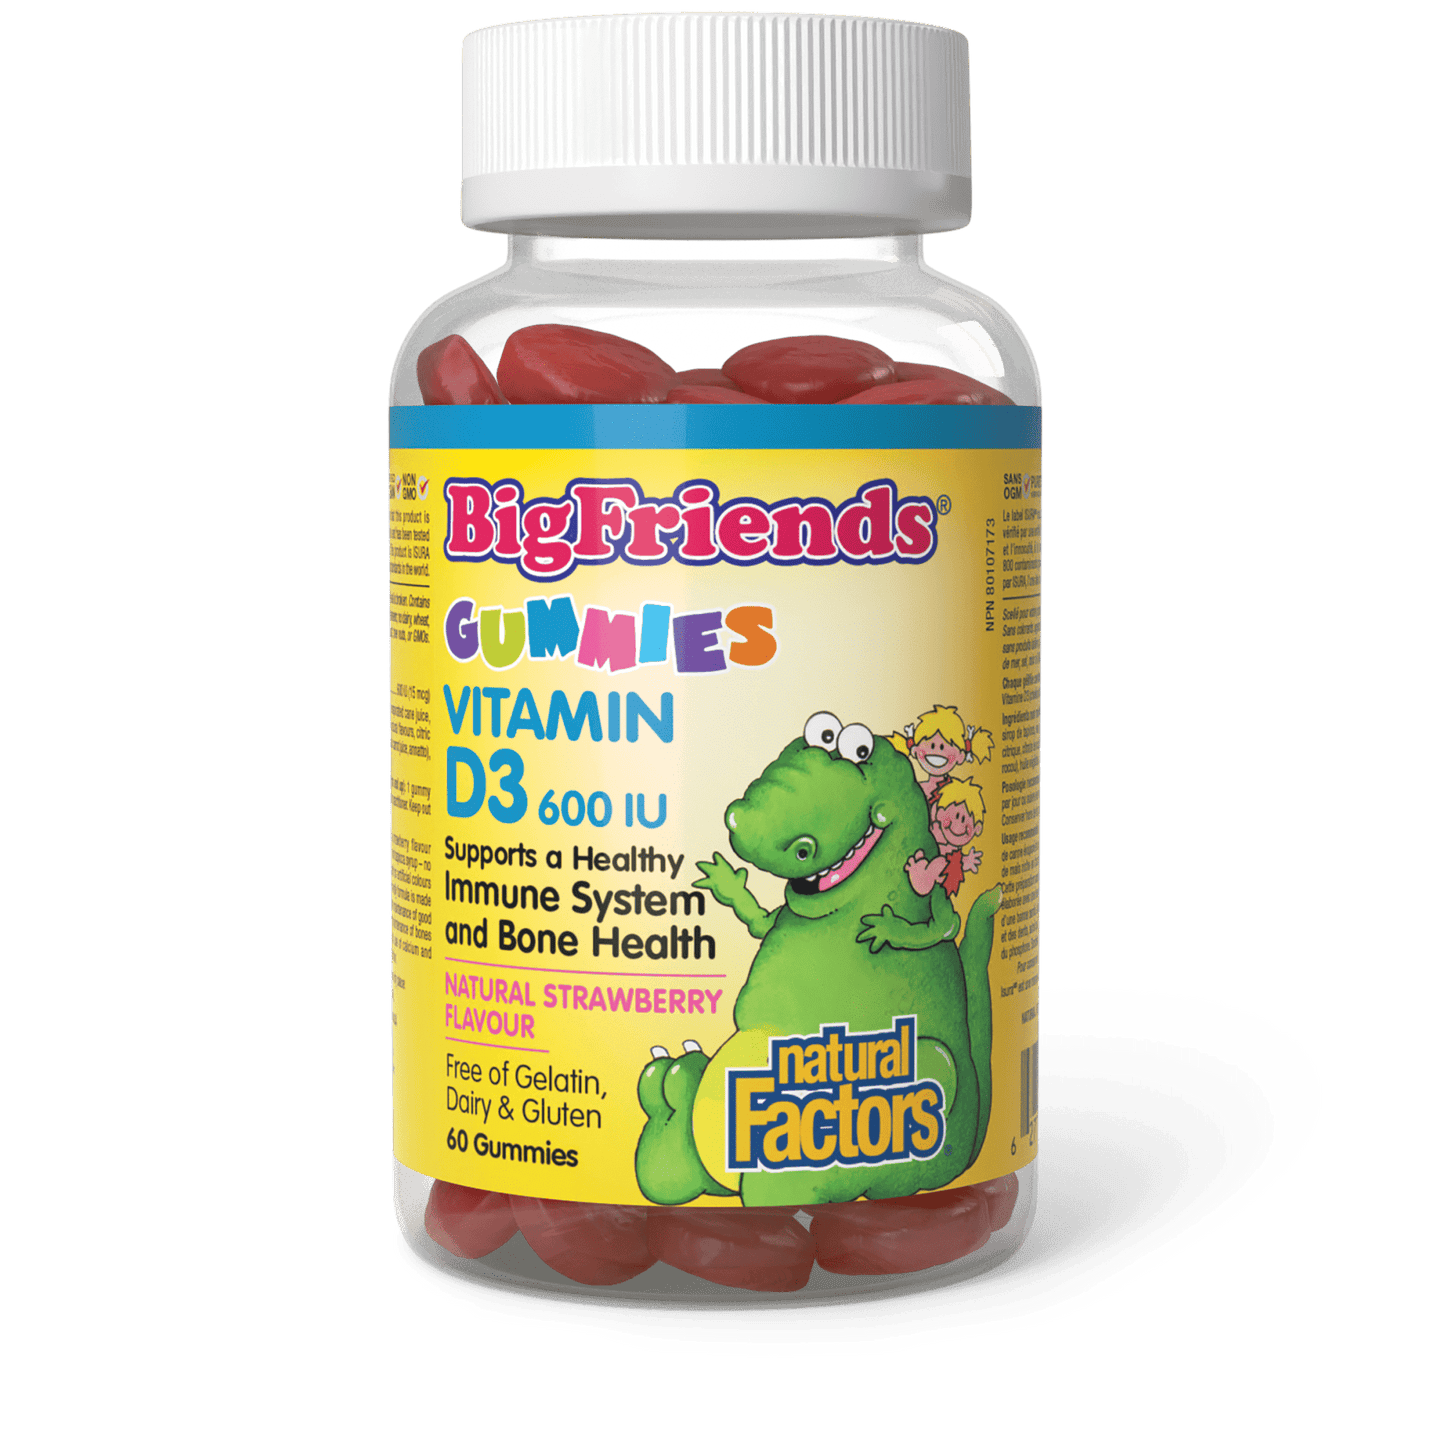 Vitamin D3 600 IU Natural Strawberry Flavour, Big Friends, Natural Factors|v|image|1048